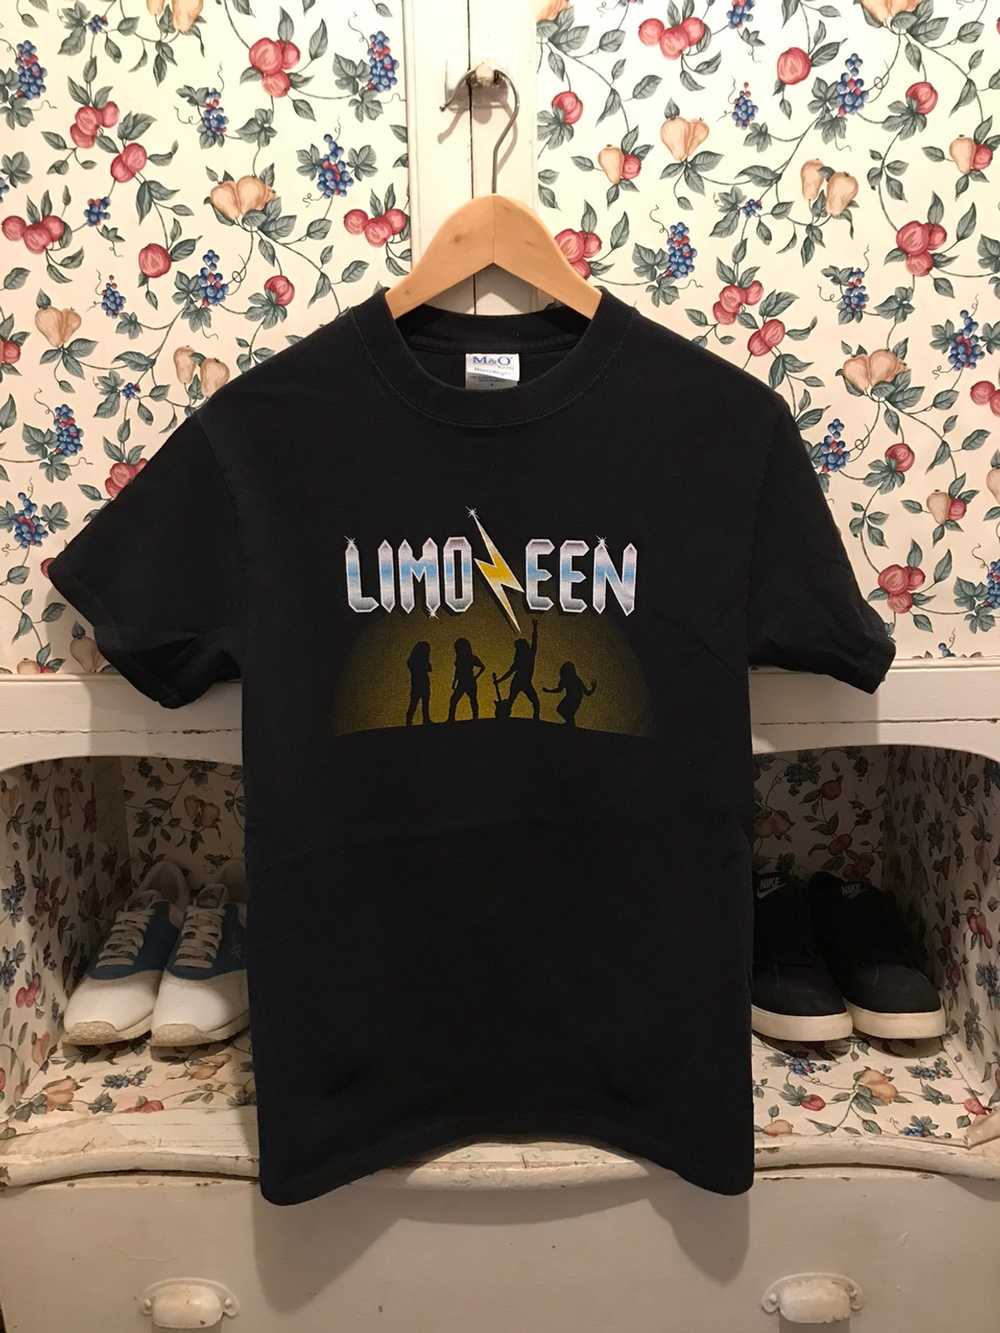 Vintage Vintage 2001 Limozeen Band T-shirt - Gem